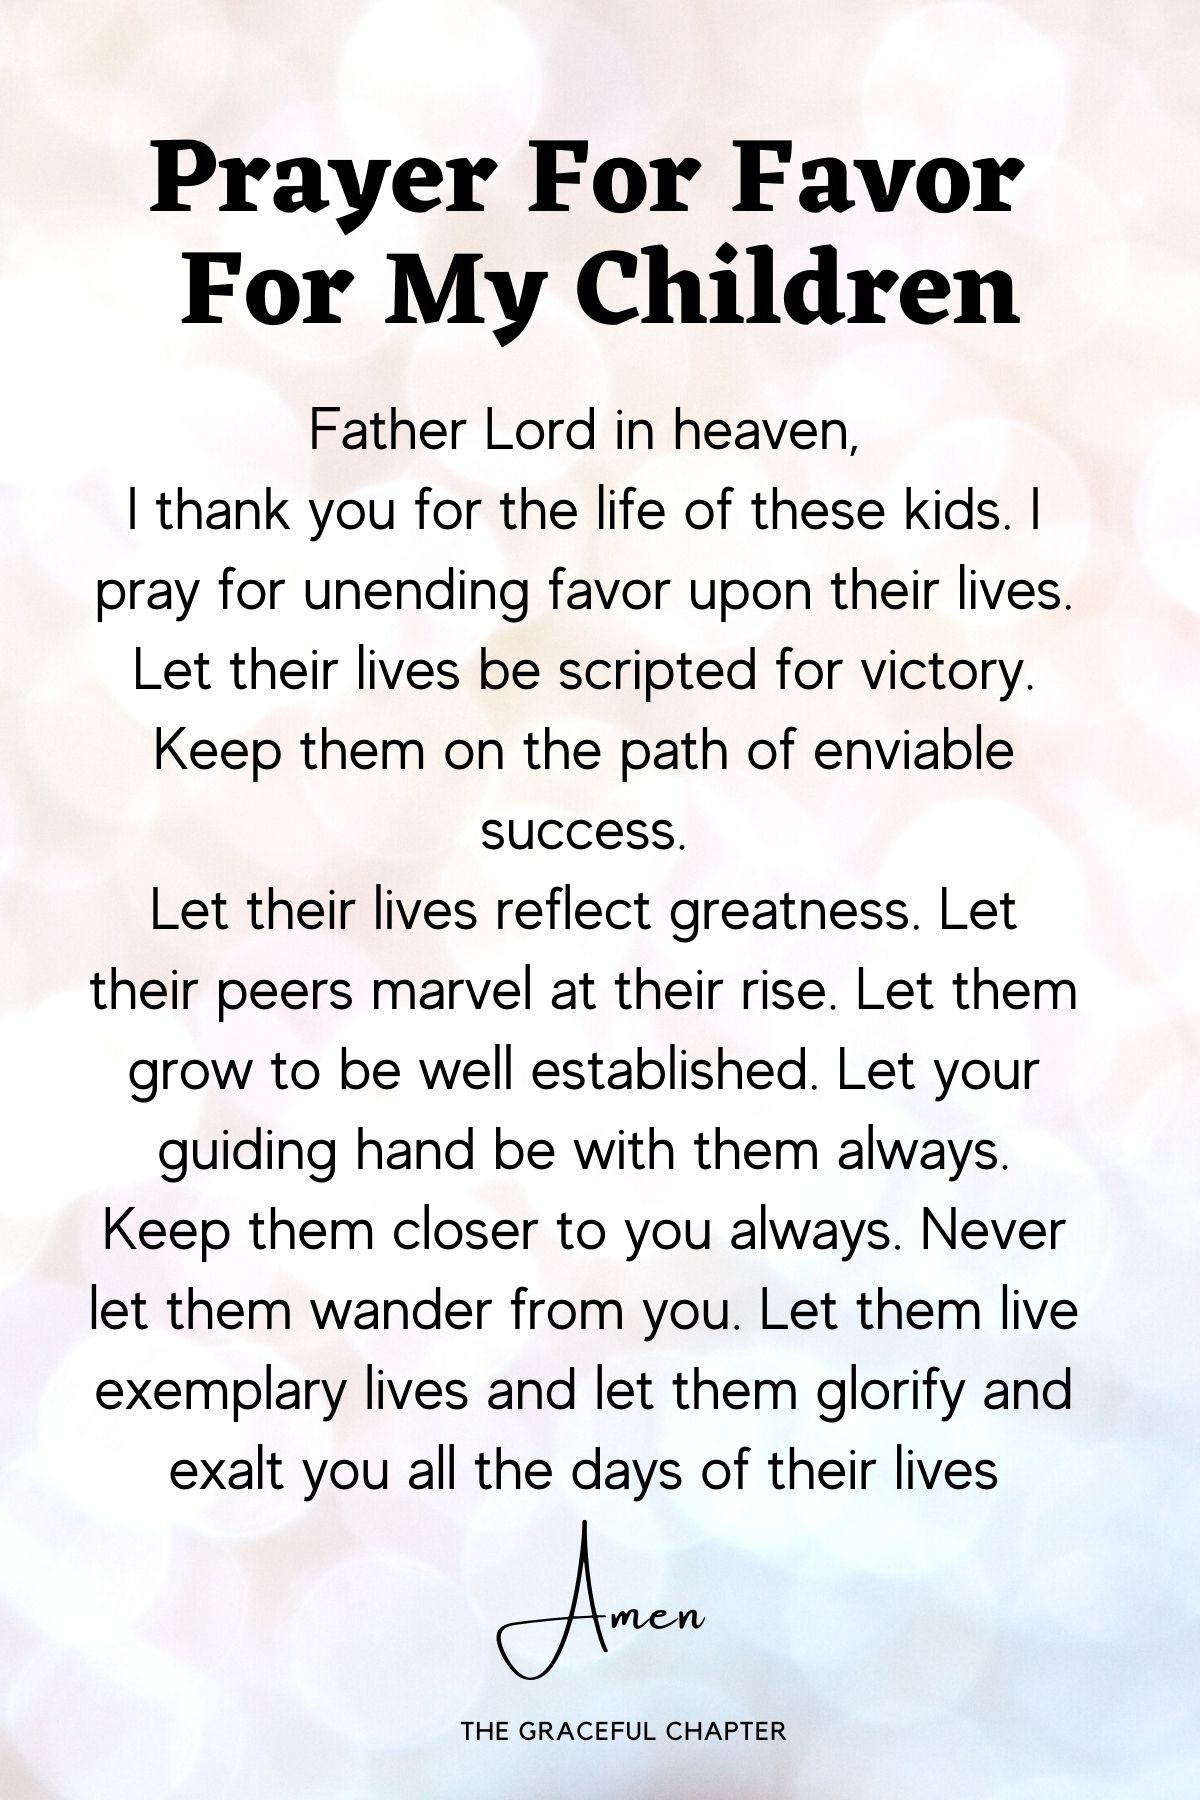 Prayer for favor for my children